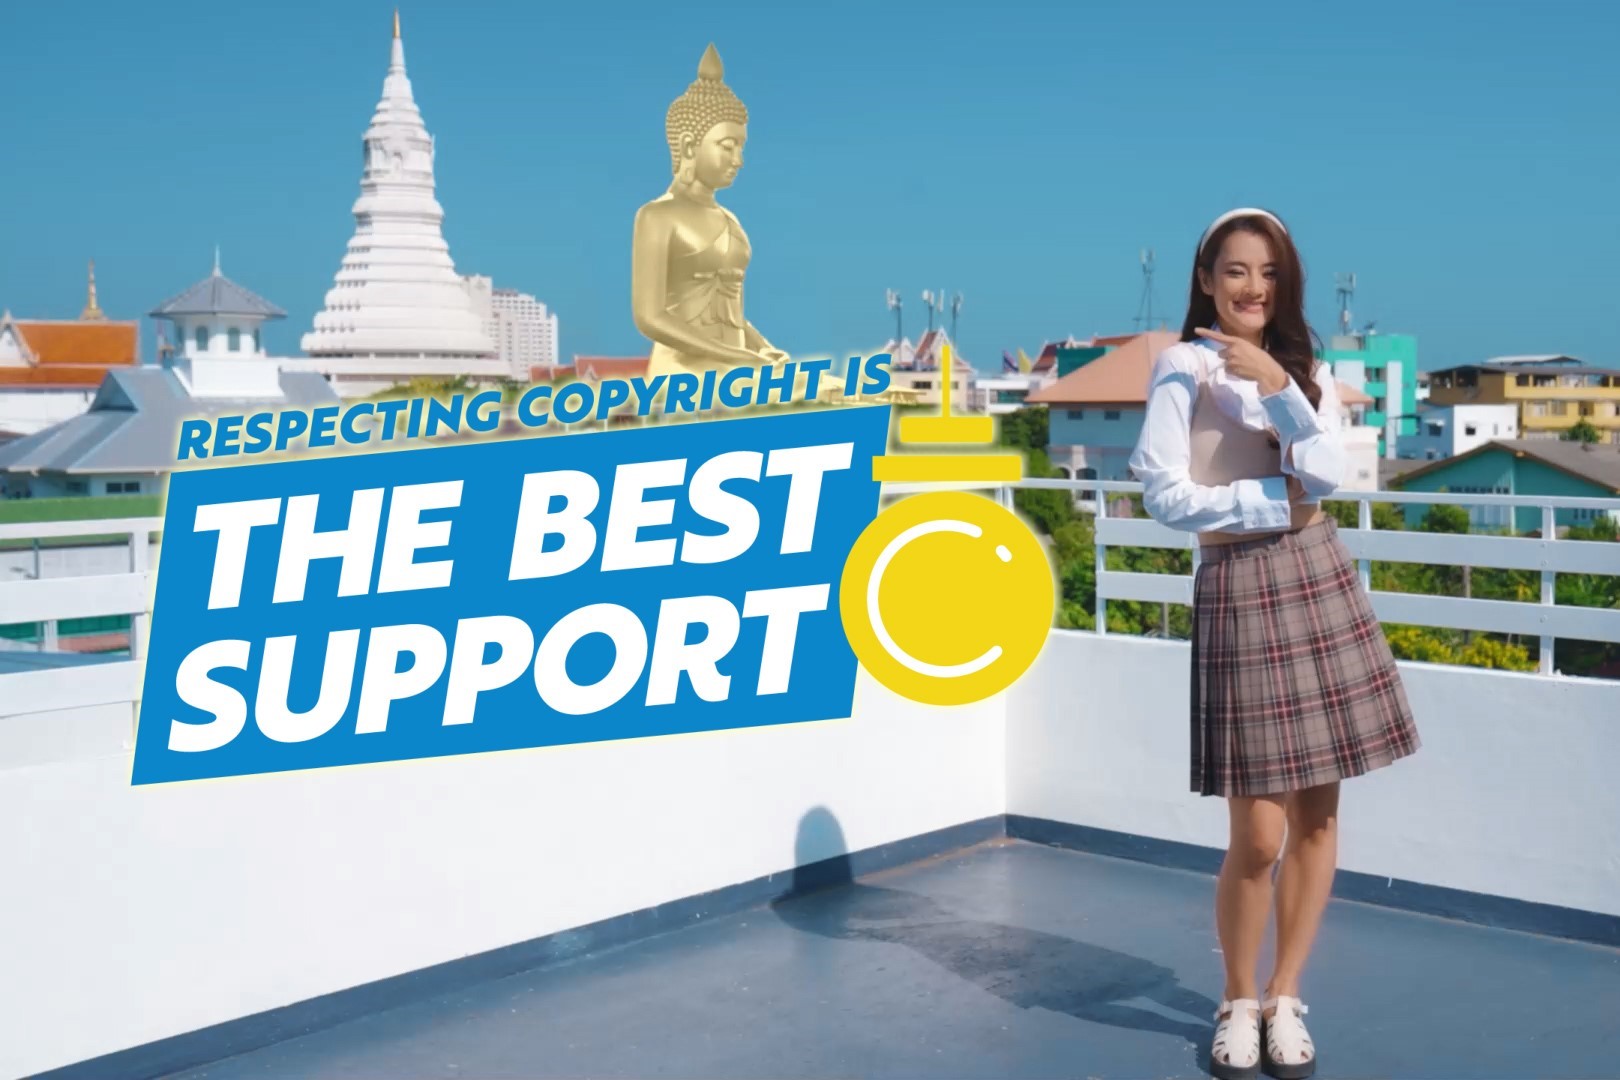 สมาคมส่งเสริมลิขสิทธิ์ระหว่างประเทศเปิดตัว The Best Support Campaign ที่ประเทศไทย การเคารพลิขสิทธิ์คือการสนับสนุนศิลปินที่ดีที่สุด